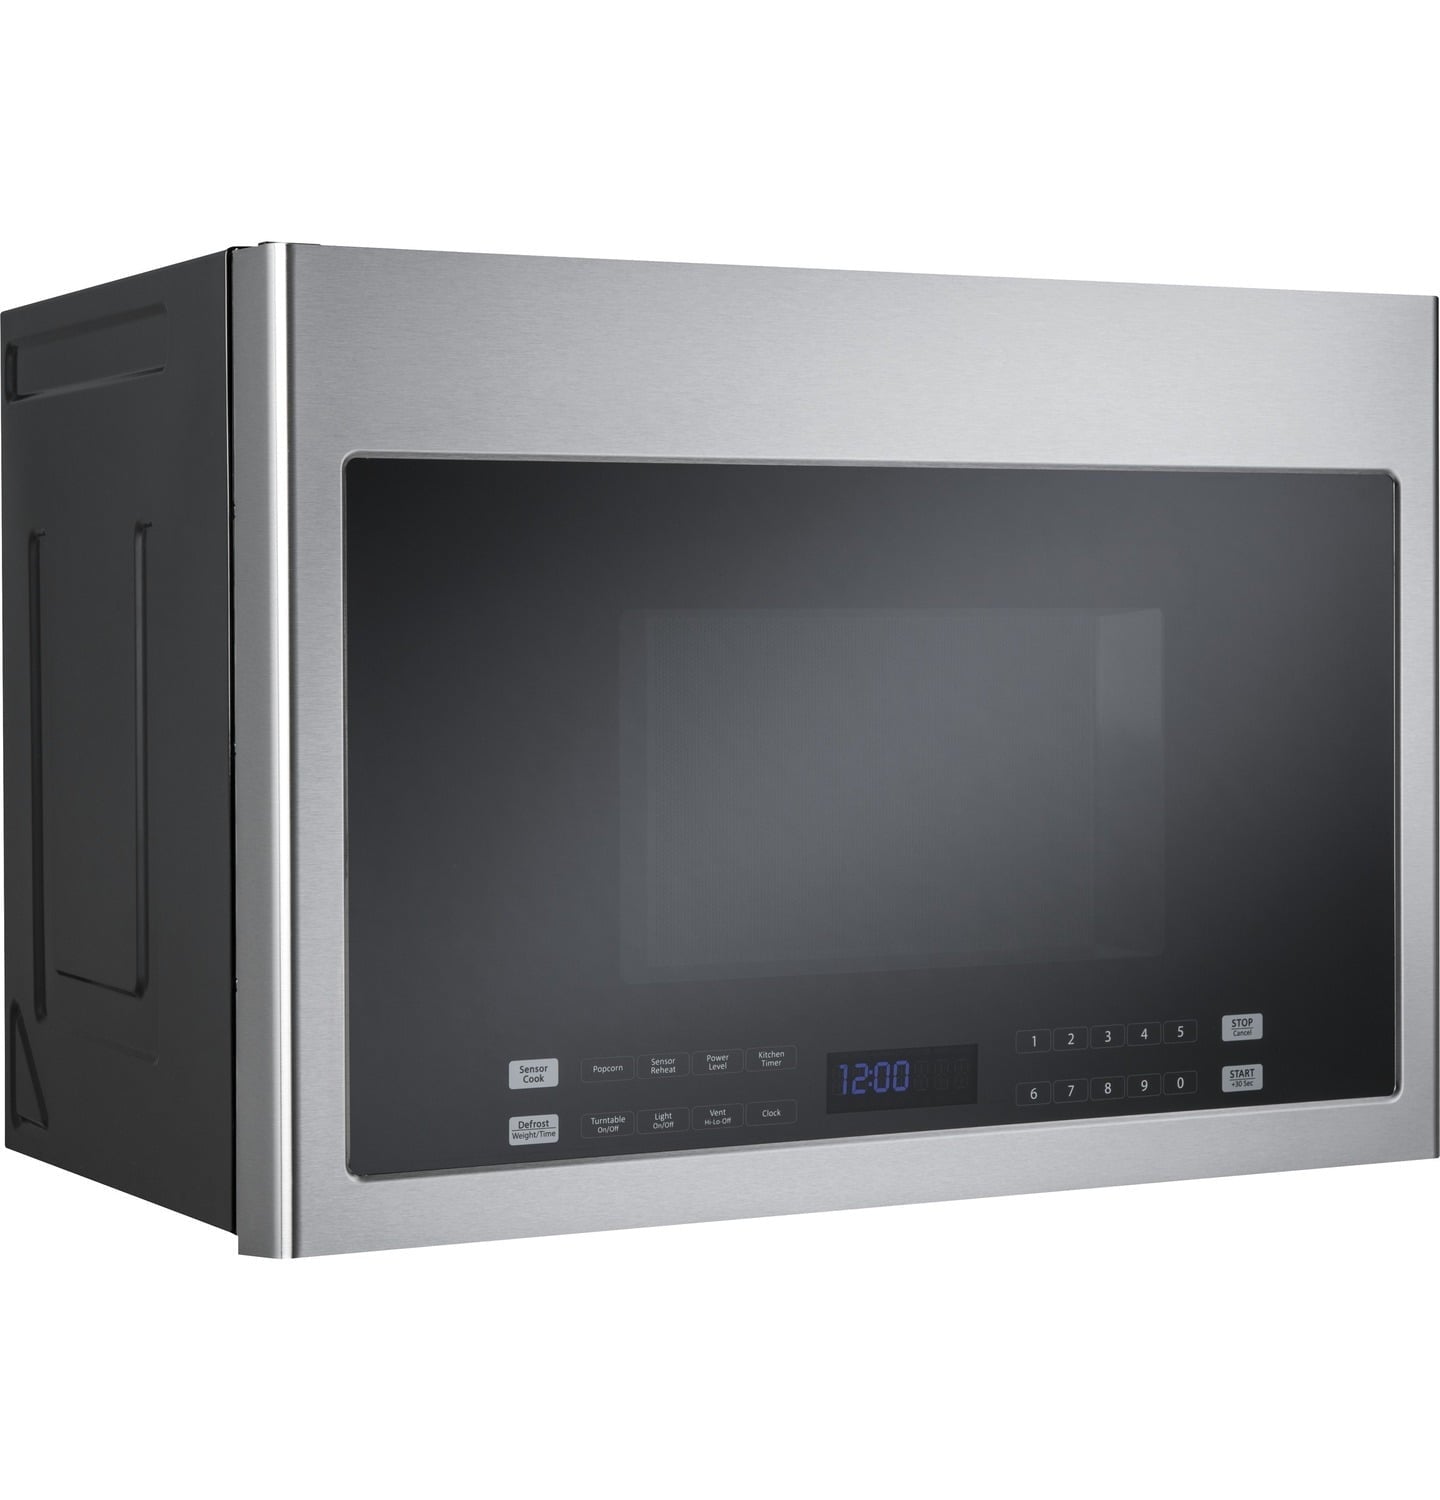 Haier HMV1472BHS 24" 1.4 Cu. Ft. Over-The-Range Microwave Oven